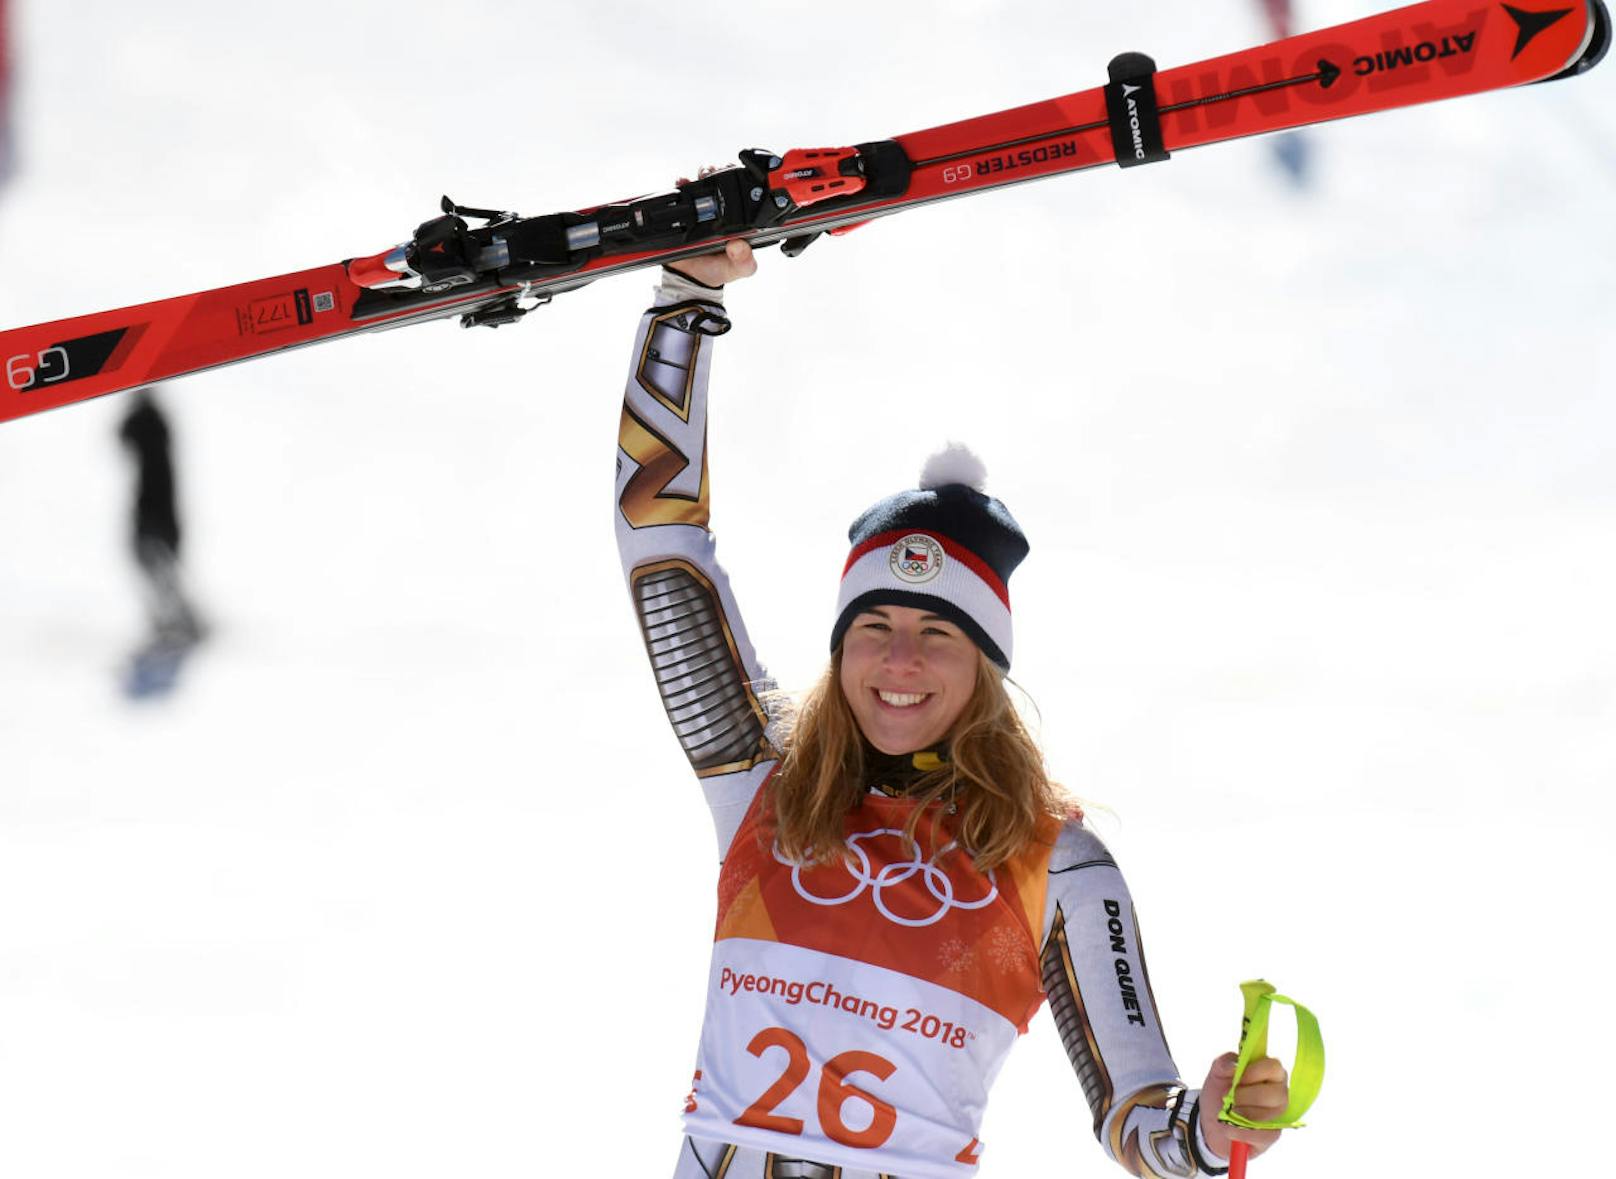 Die größte Sensation bei den Spielen in Pyeongchang! Ester Ledecka - die Favoritin im Snowboard-Parallelbewerb, die auch gern einmal die Skier anschnallt - rast völlig überraschend zum Triumph im Super-G! Die Leidtragende dabei war Anna Veith, der das sicher geglaubte Gold entrissen wurde. 